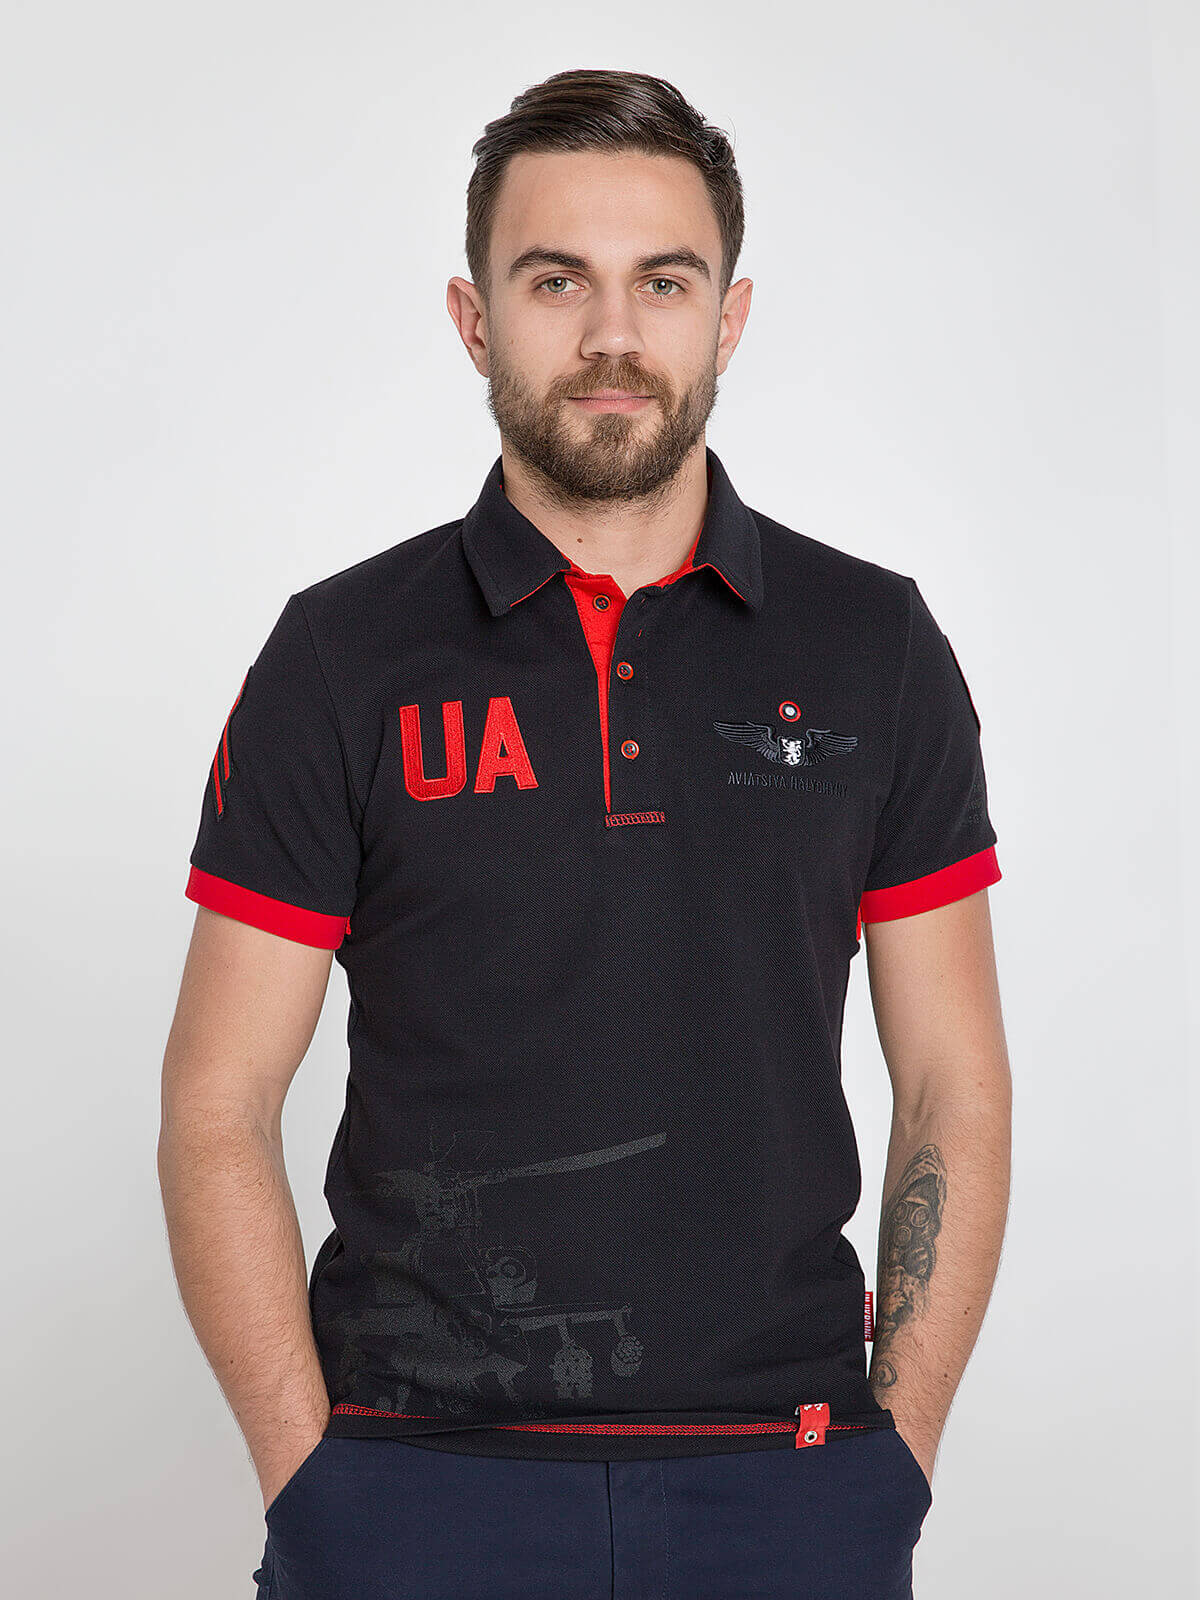 Men's Polo Shirt 12 Brigade (The Dragon Slayer). Color black. .